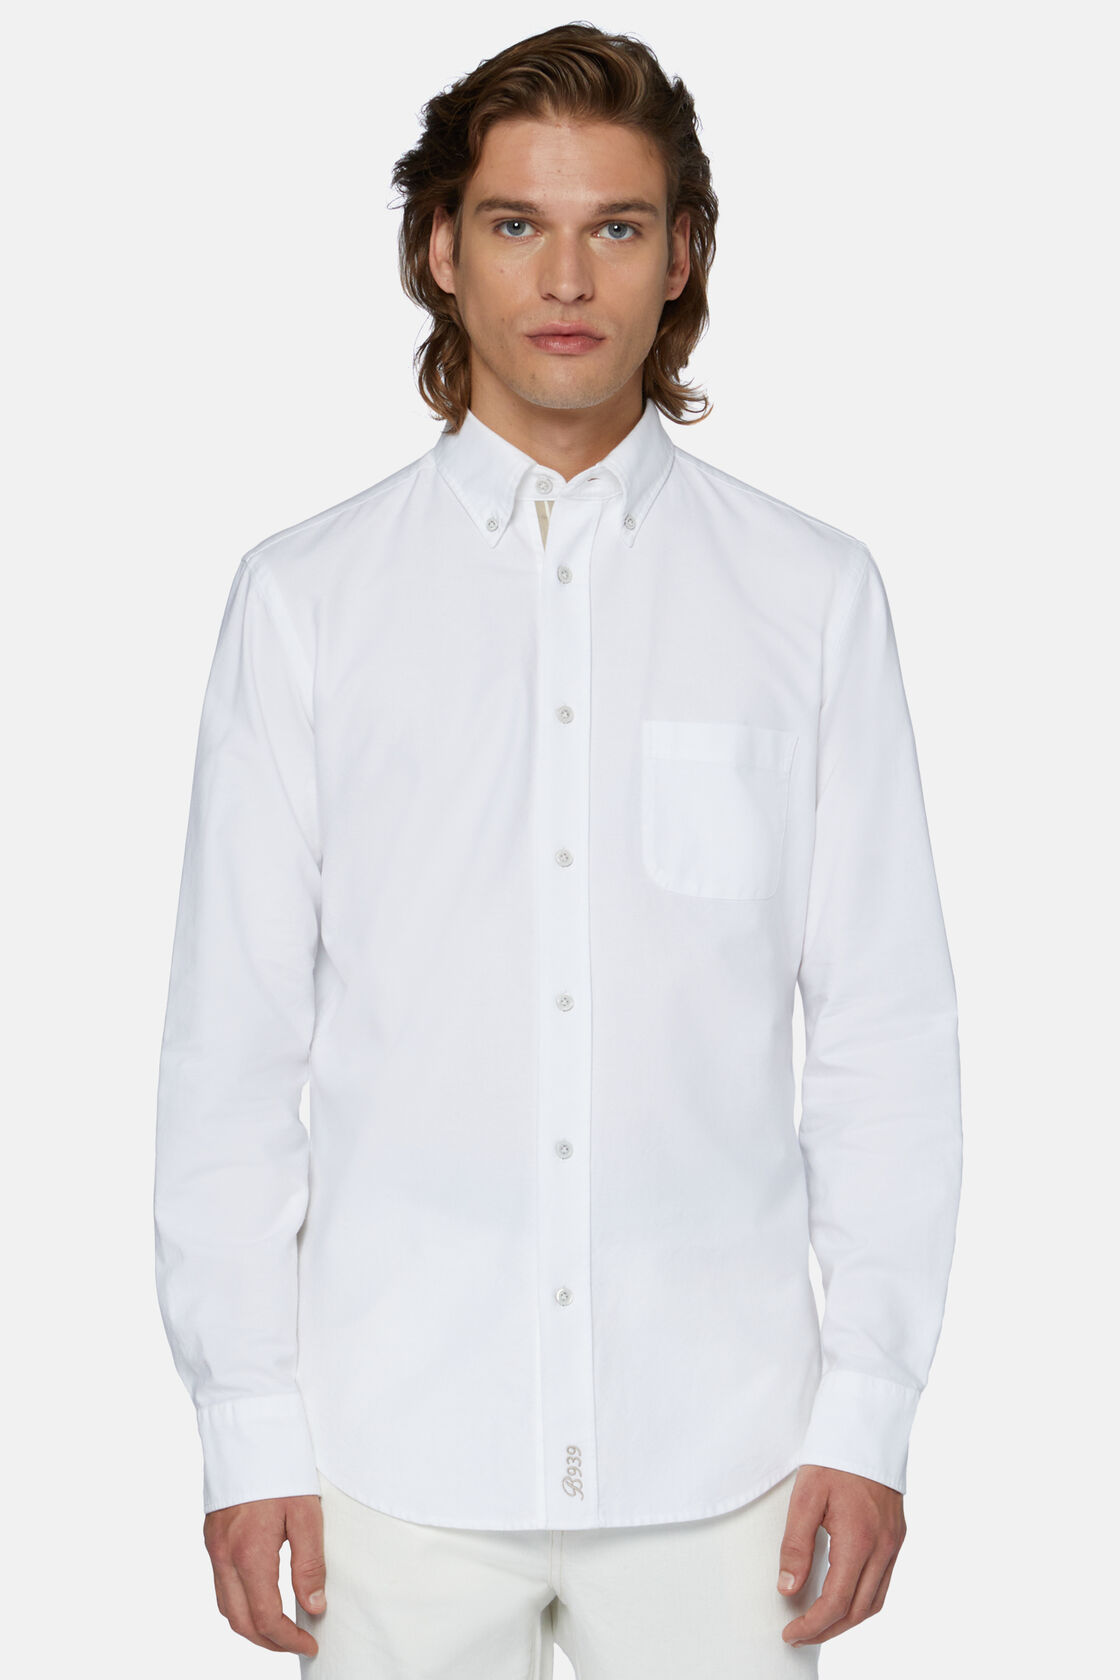 Camisa de Algodão Orgânico Oxford Branca, Corte Regular, White, hi-res